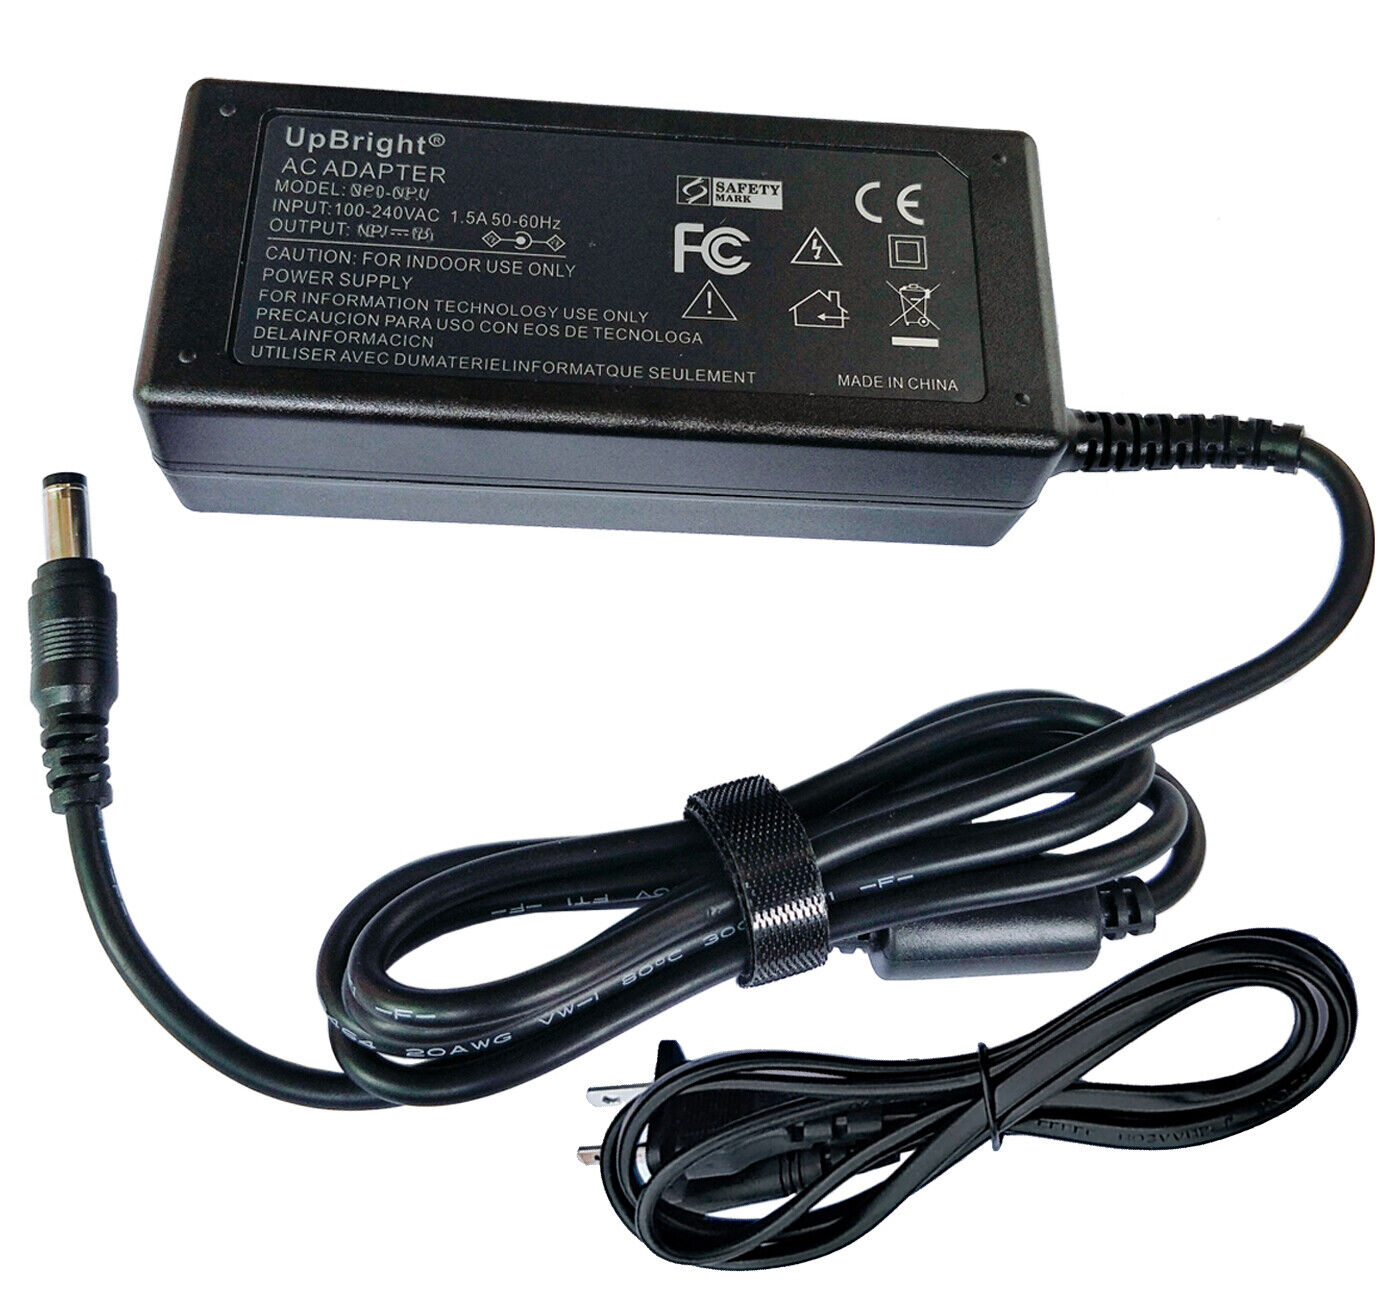 24V AC Adapter For Kodak i2400 i2600 Sheetfed Scanner 24VDC Power Supply Charger